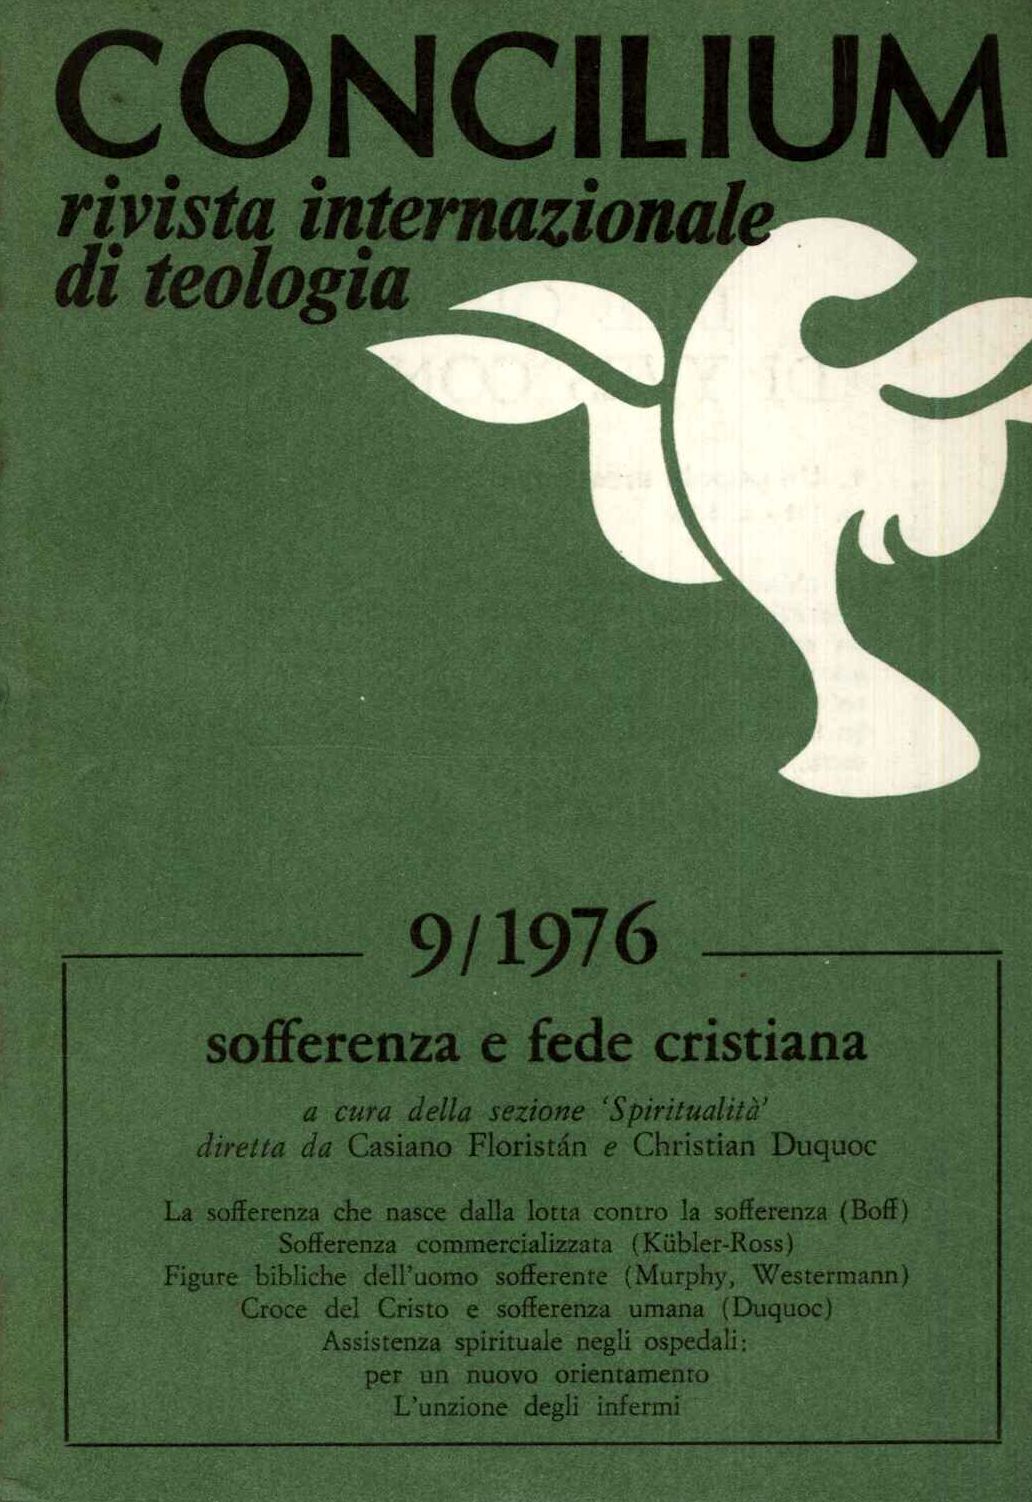 Concilium 9/1976